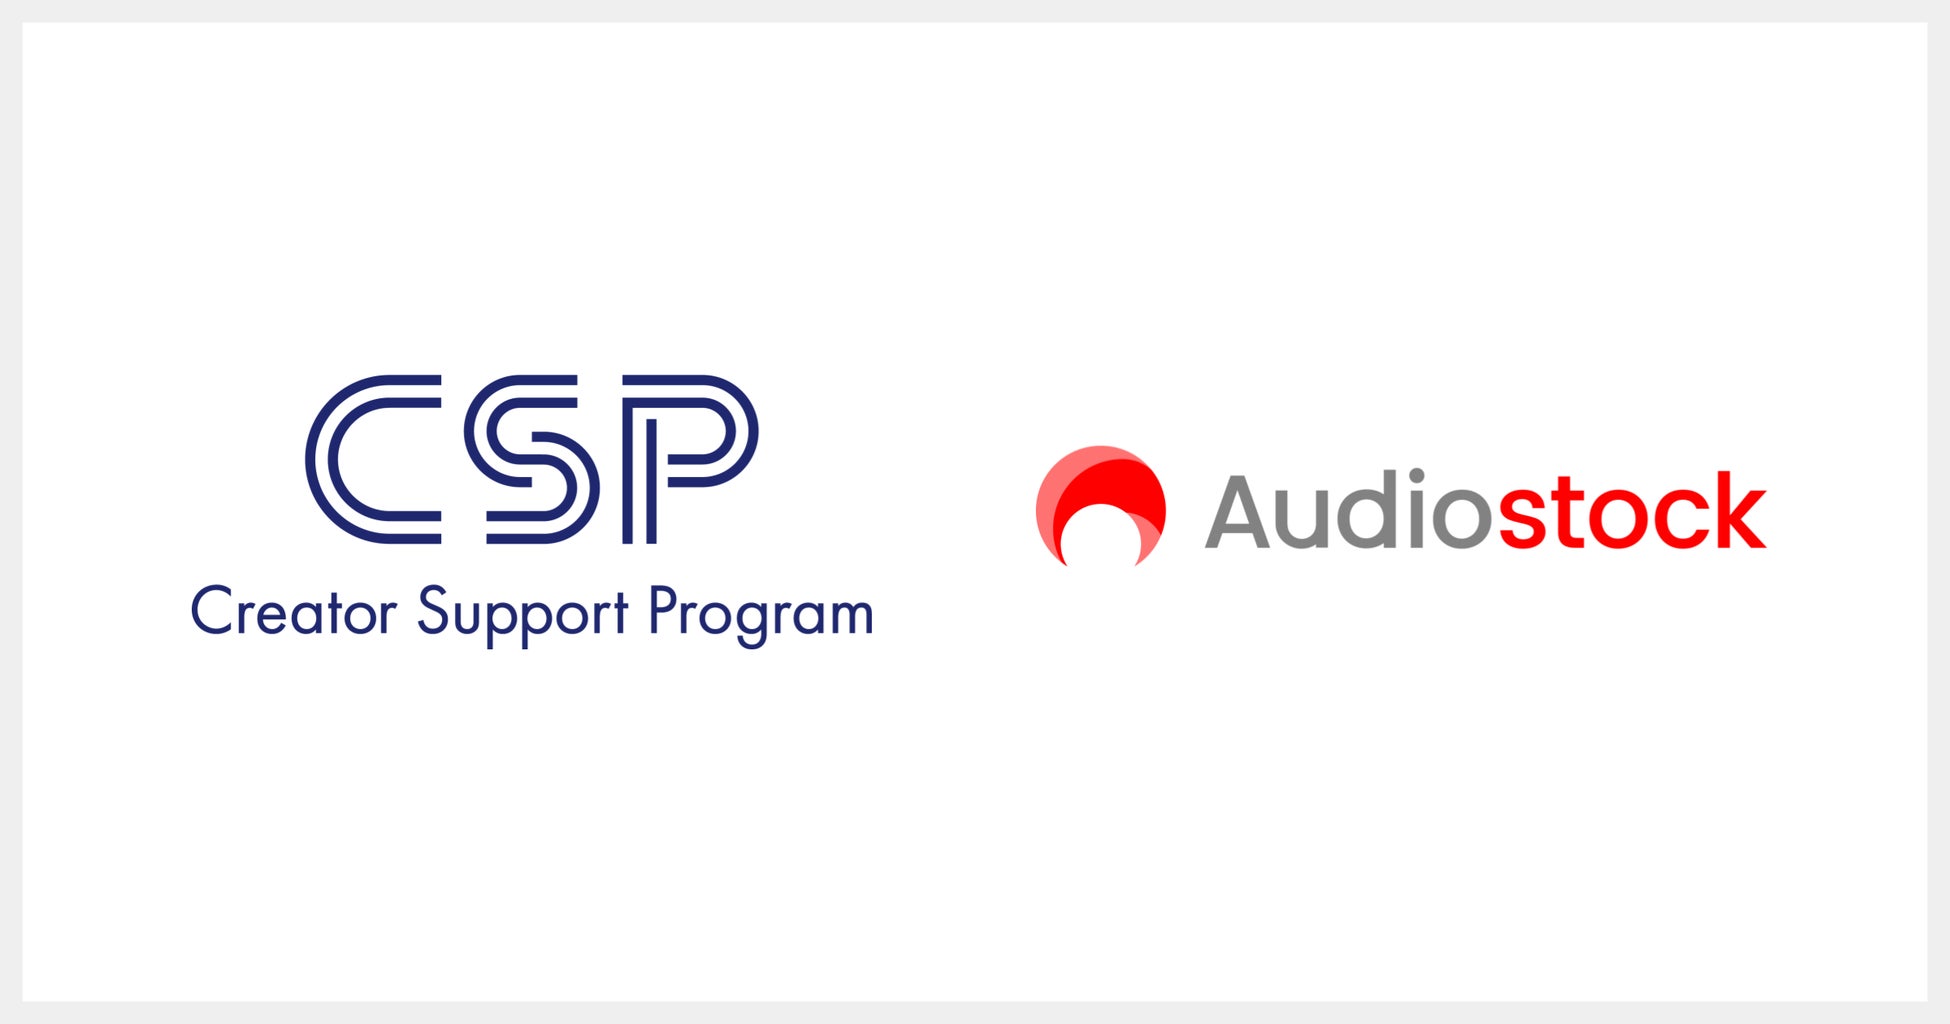 オーディオストック、KADOKAWAのMCN「CSP」を利用するクリエイターのサポートに参画 ～動画投稿やライブ配信で利用できる、Audiostockの90万点以上のBGM・効果音などを提供～